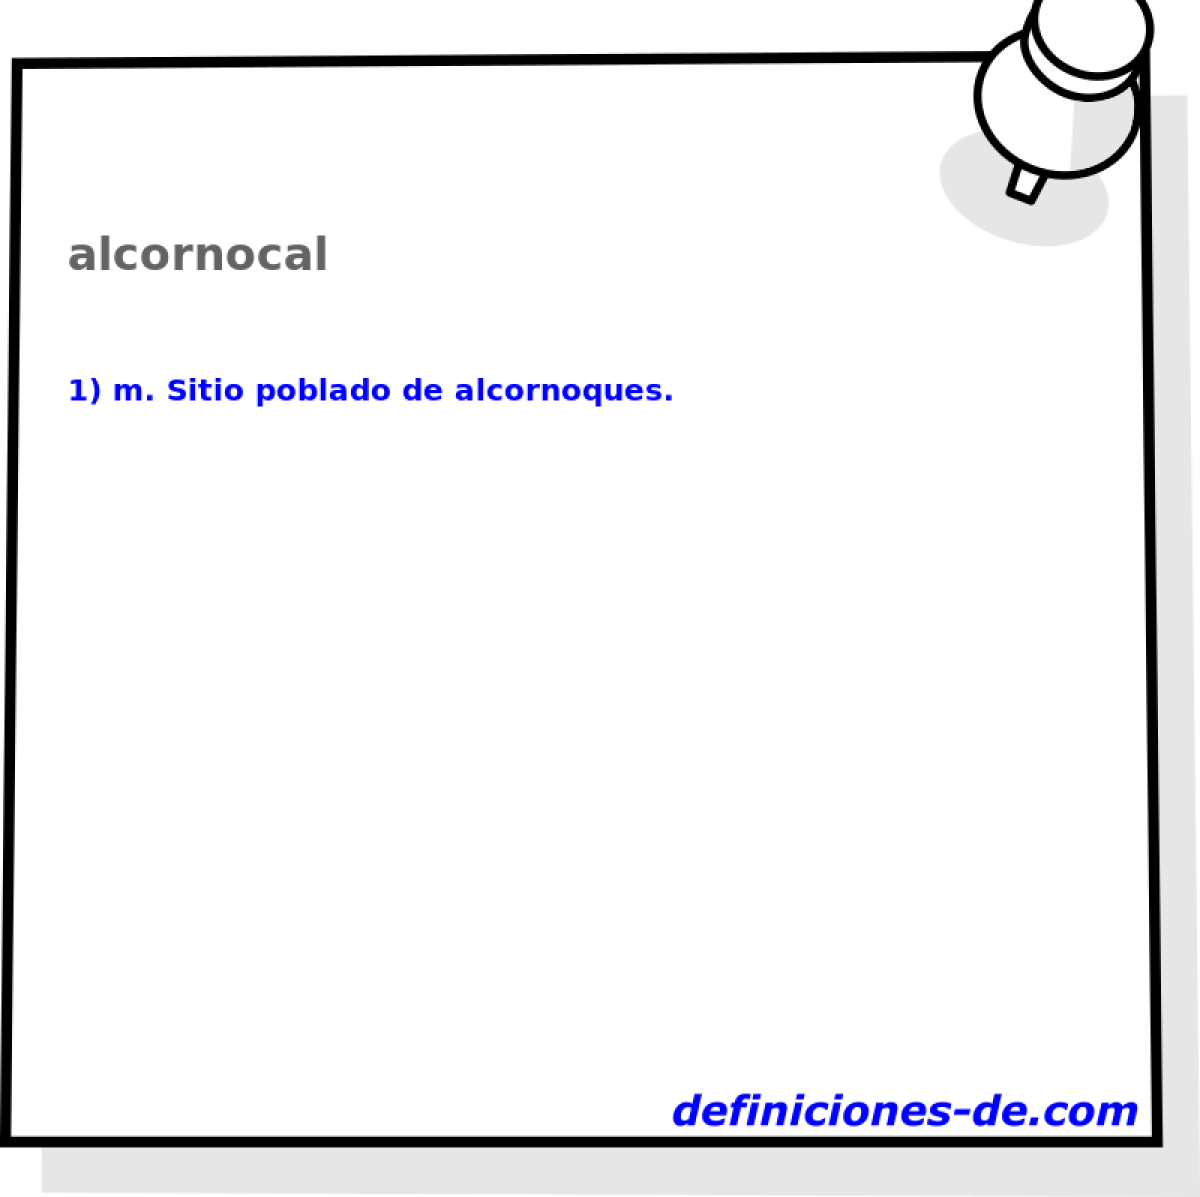 alcornocal 